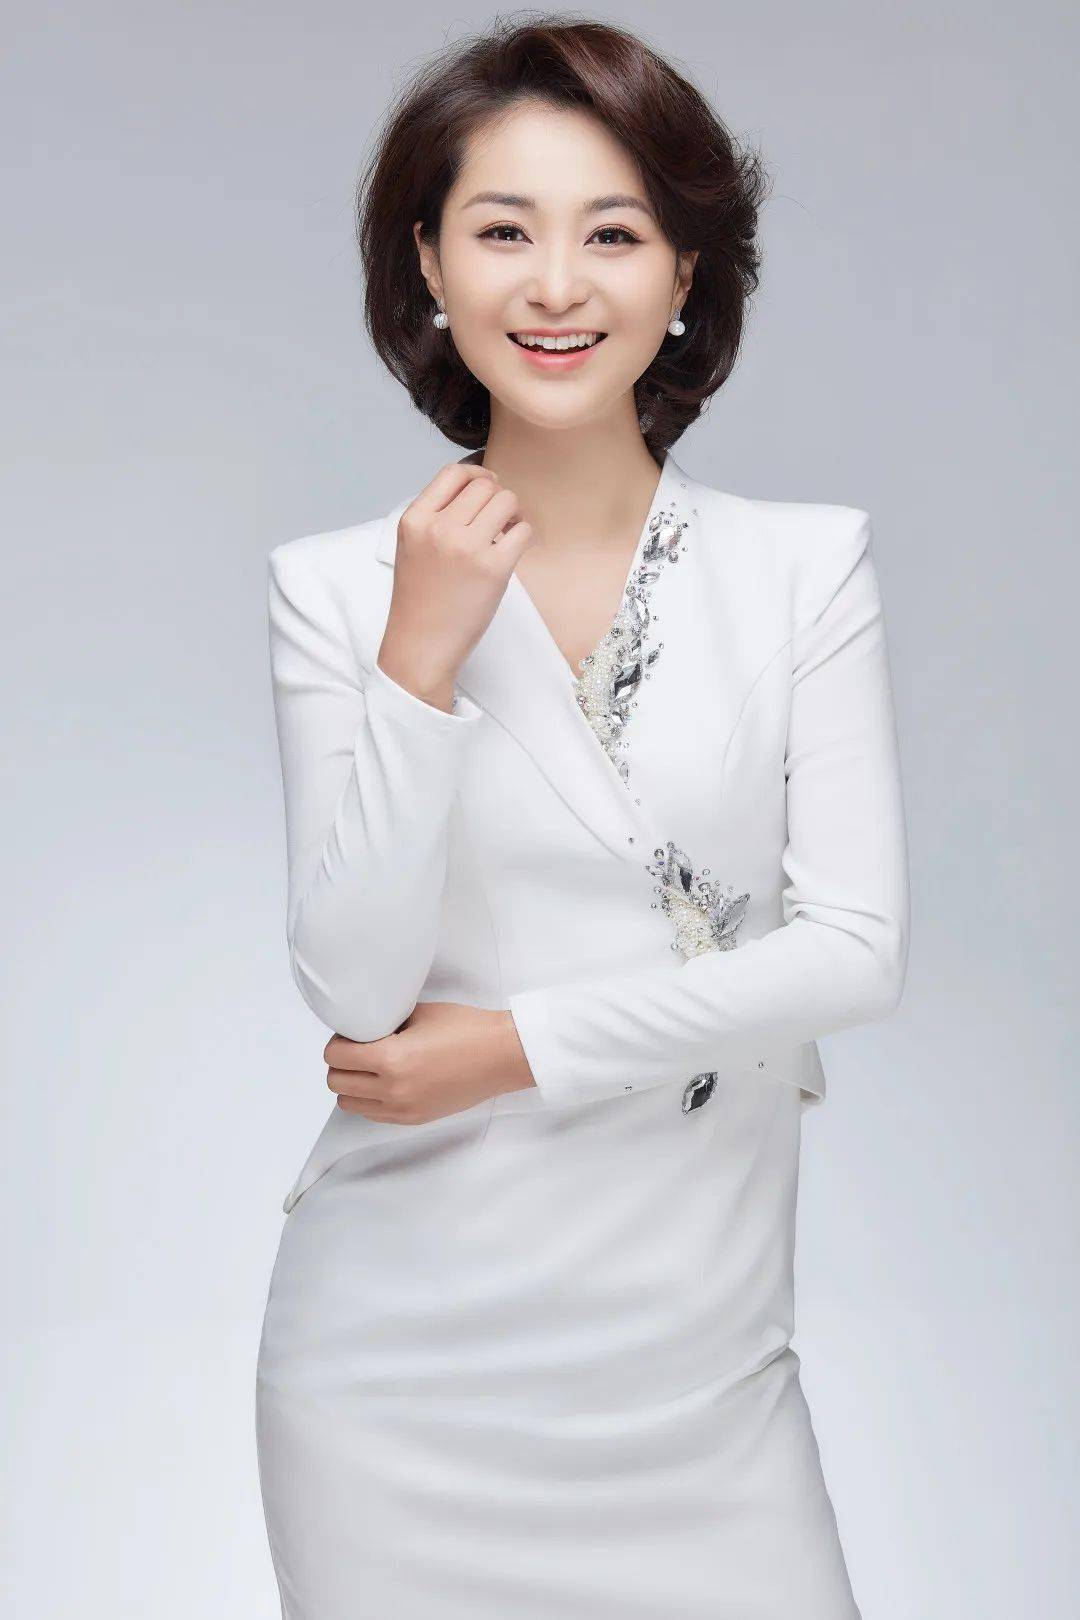 她是济南广播电视台首席主持人,济南市民心中亲切温暖的小甜沫